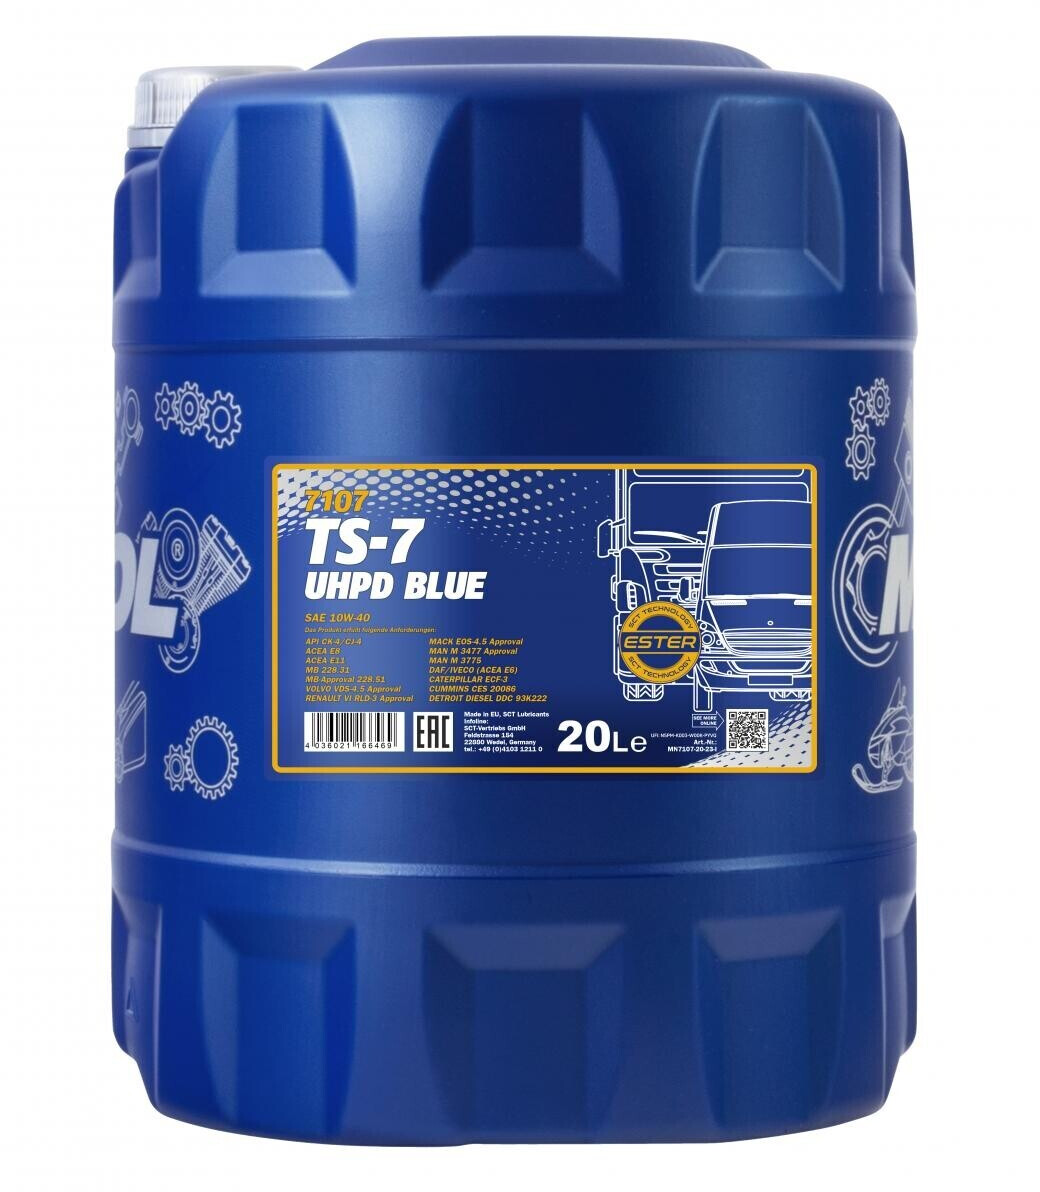 Mannol TS-7 UHPD 10W-40 Blue ab 85,19 €